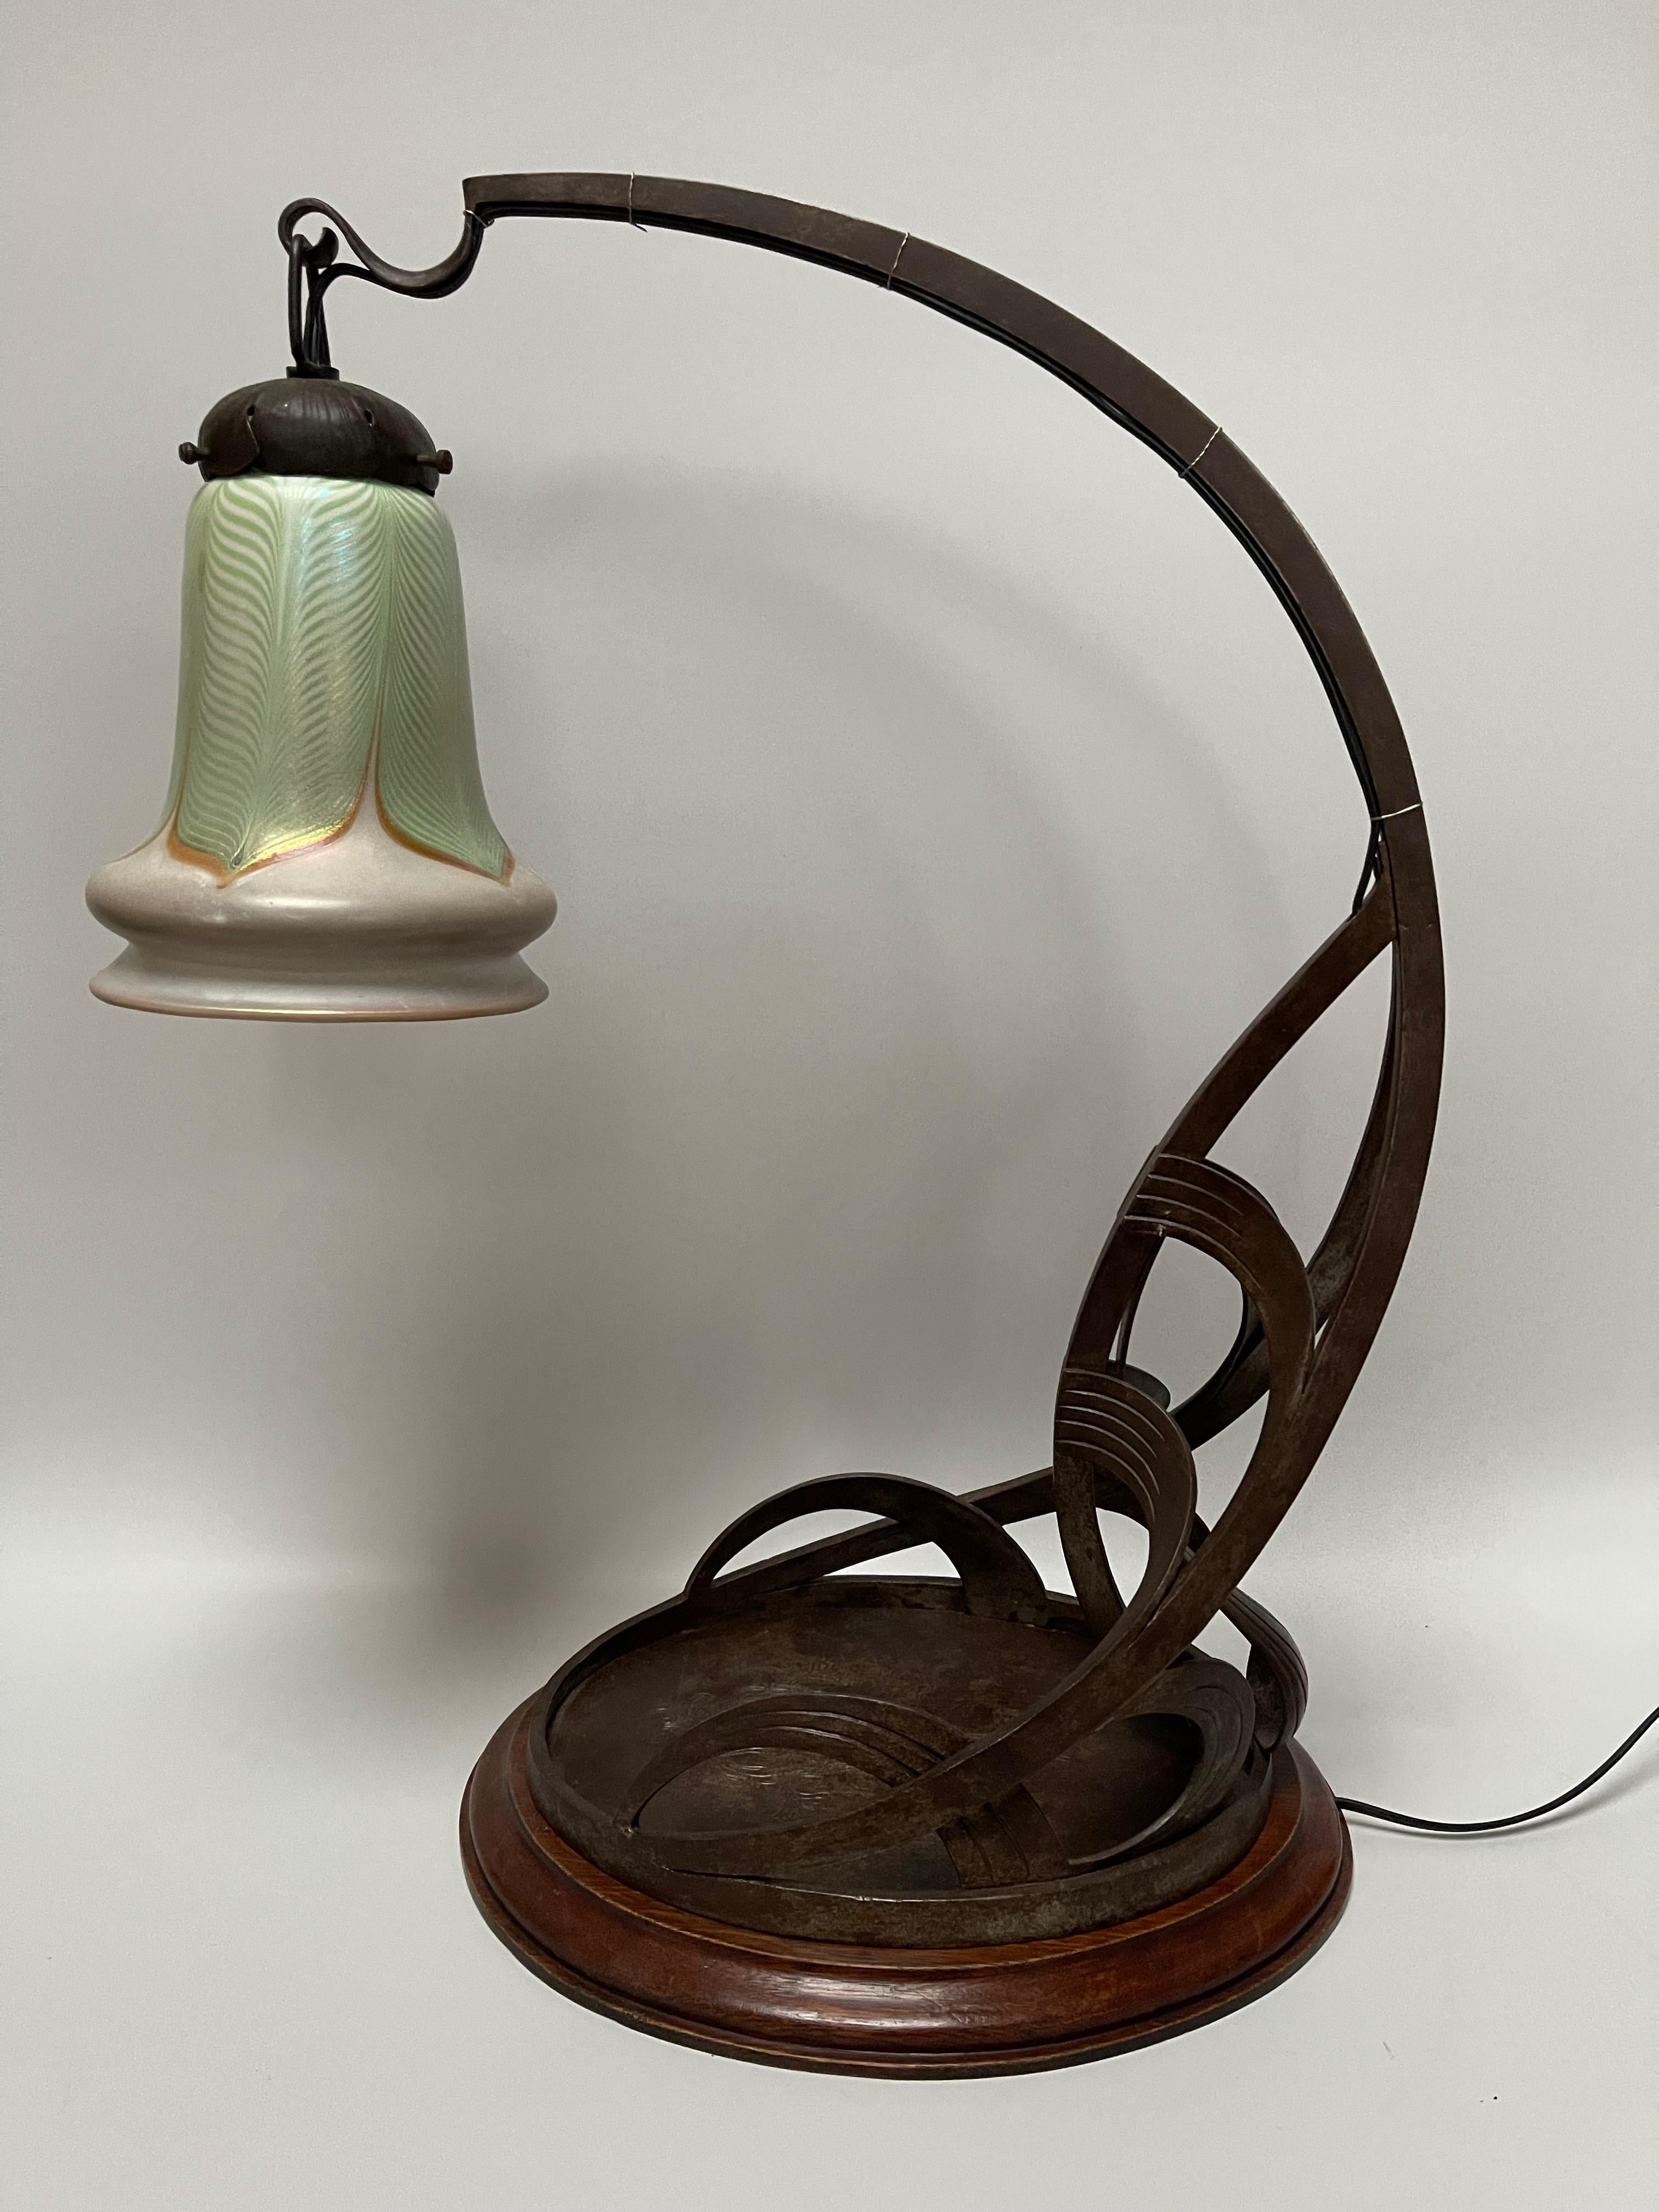 20th Century Art Nouveau Table Lamp signed Quezal